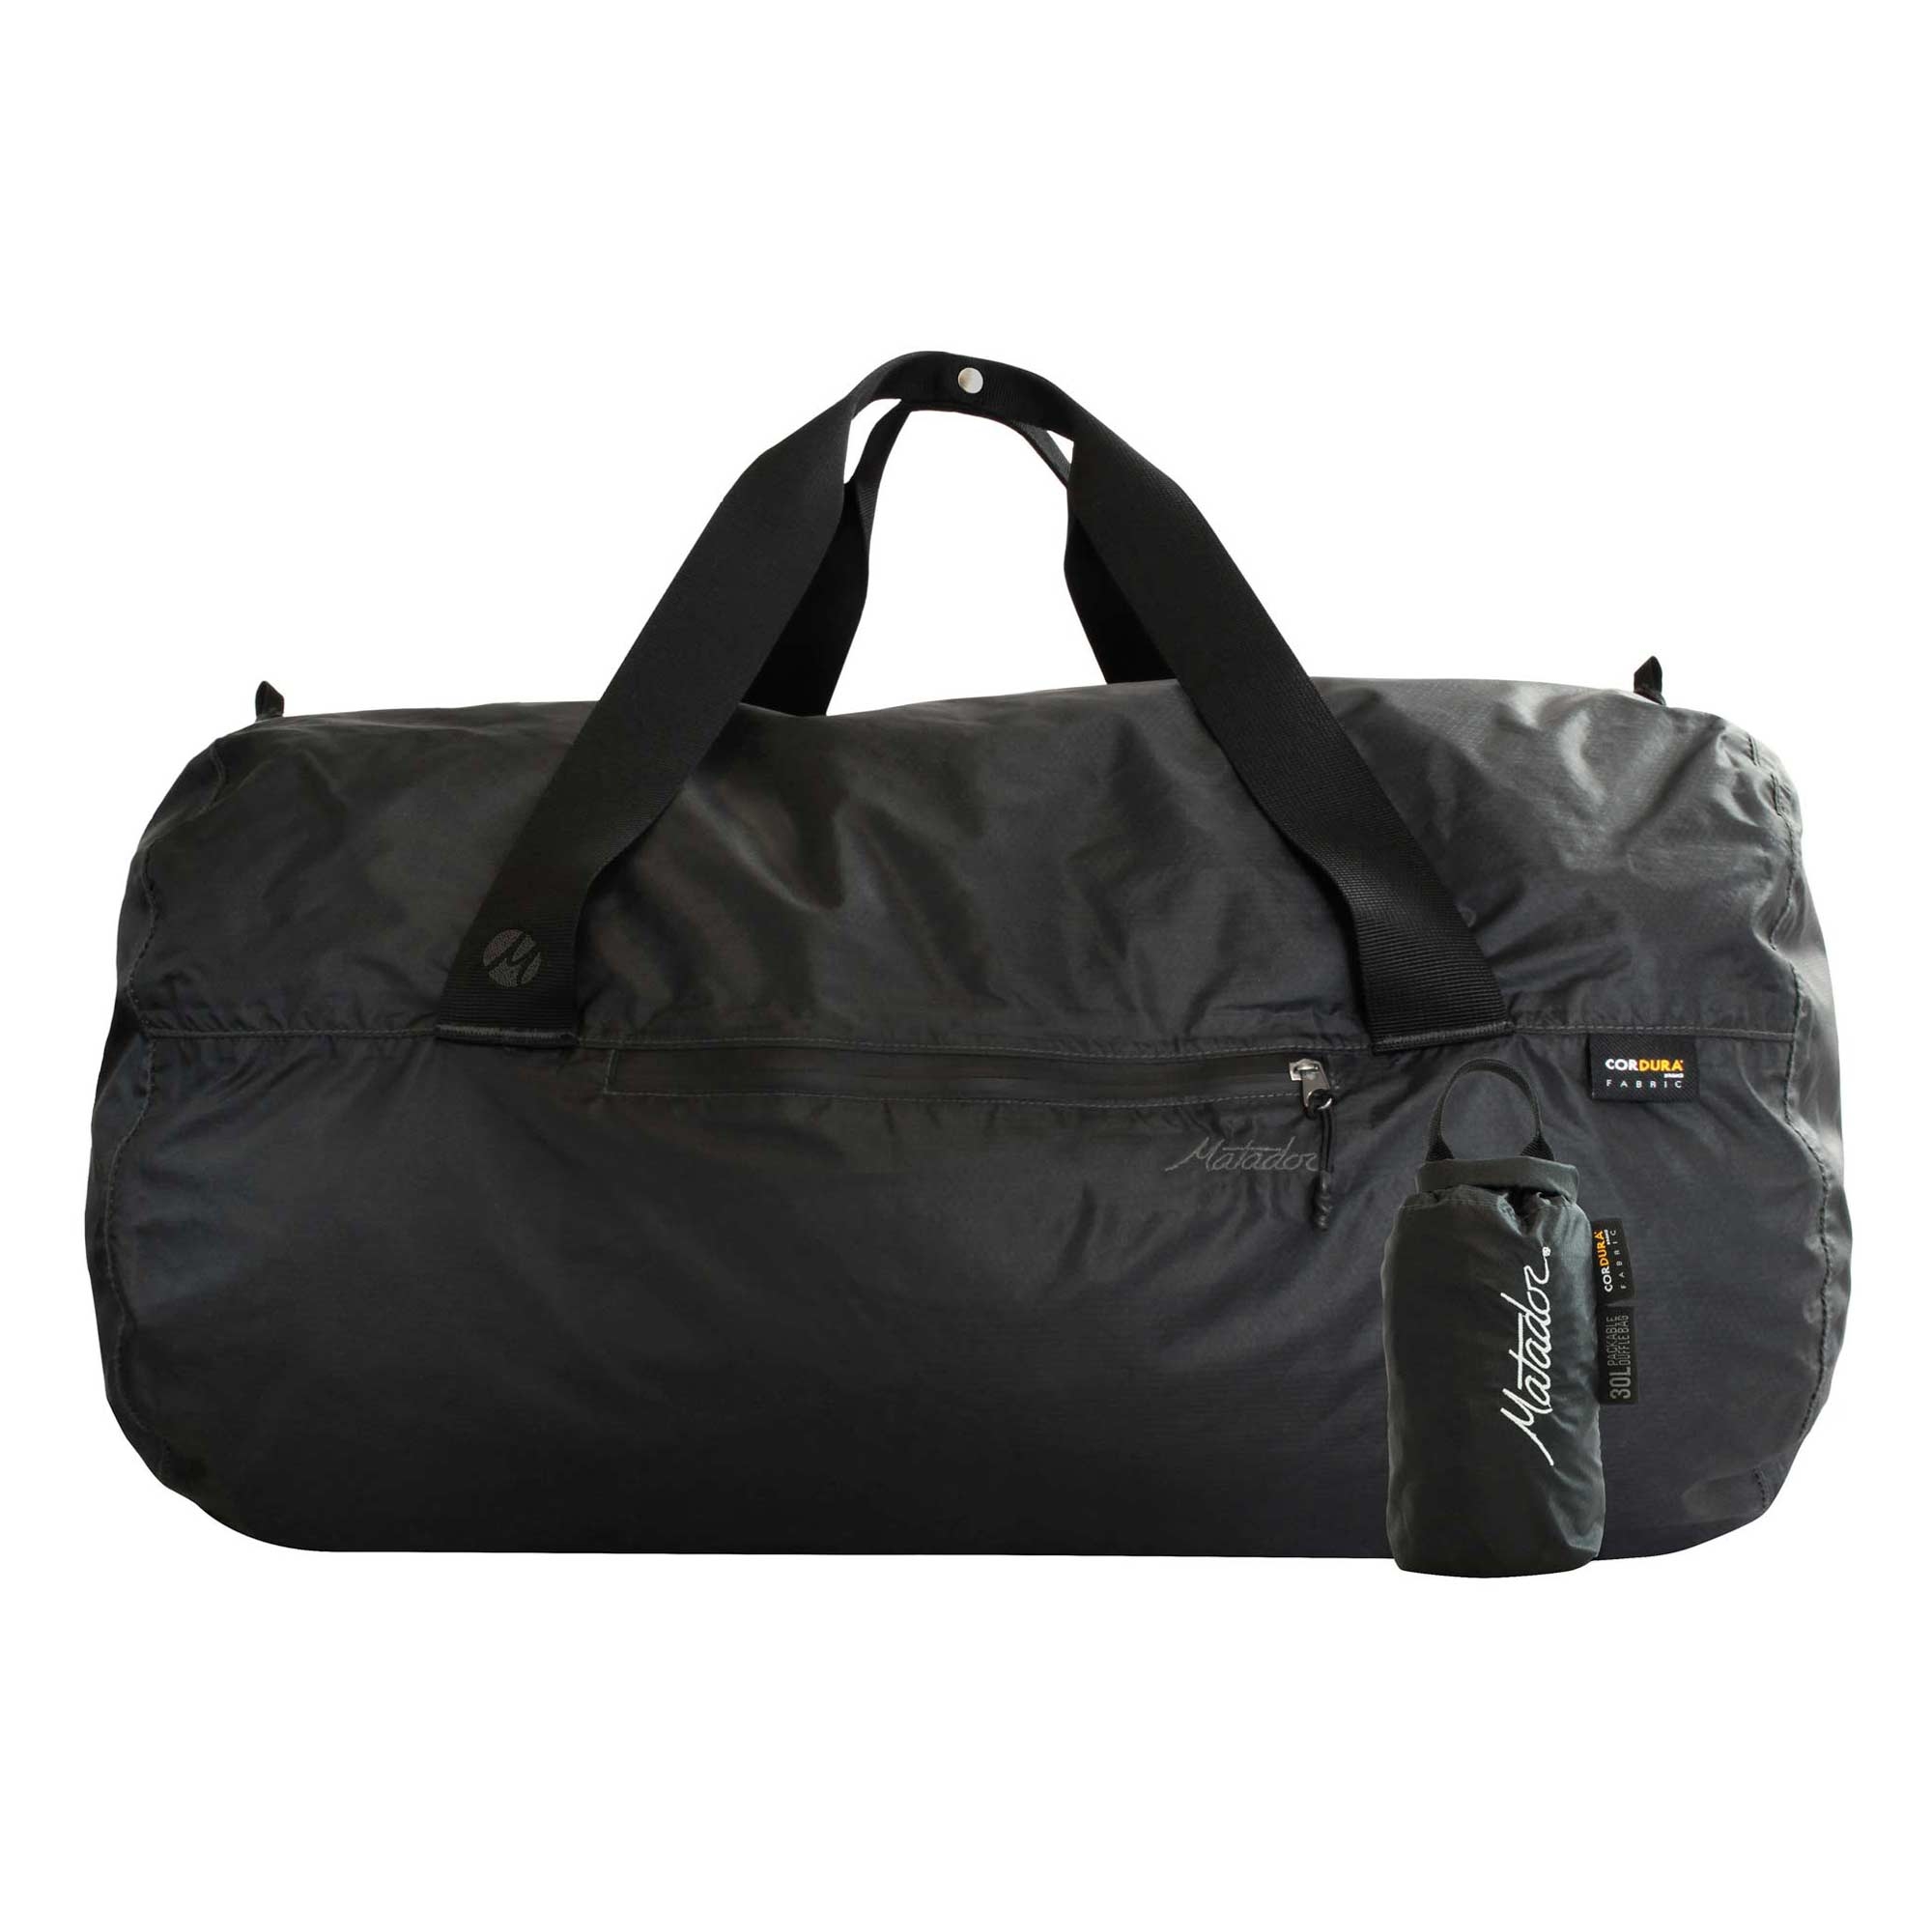 MATADOR Bag TRANSIT30 2.0 Duffle, charcoal